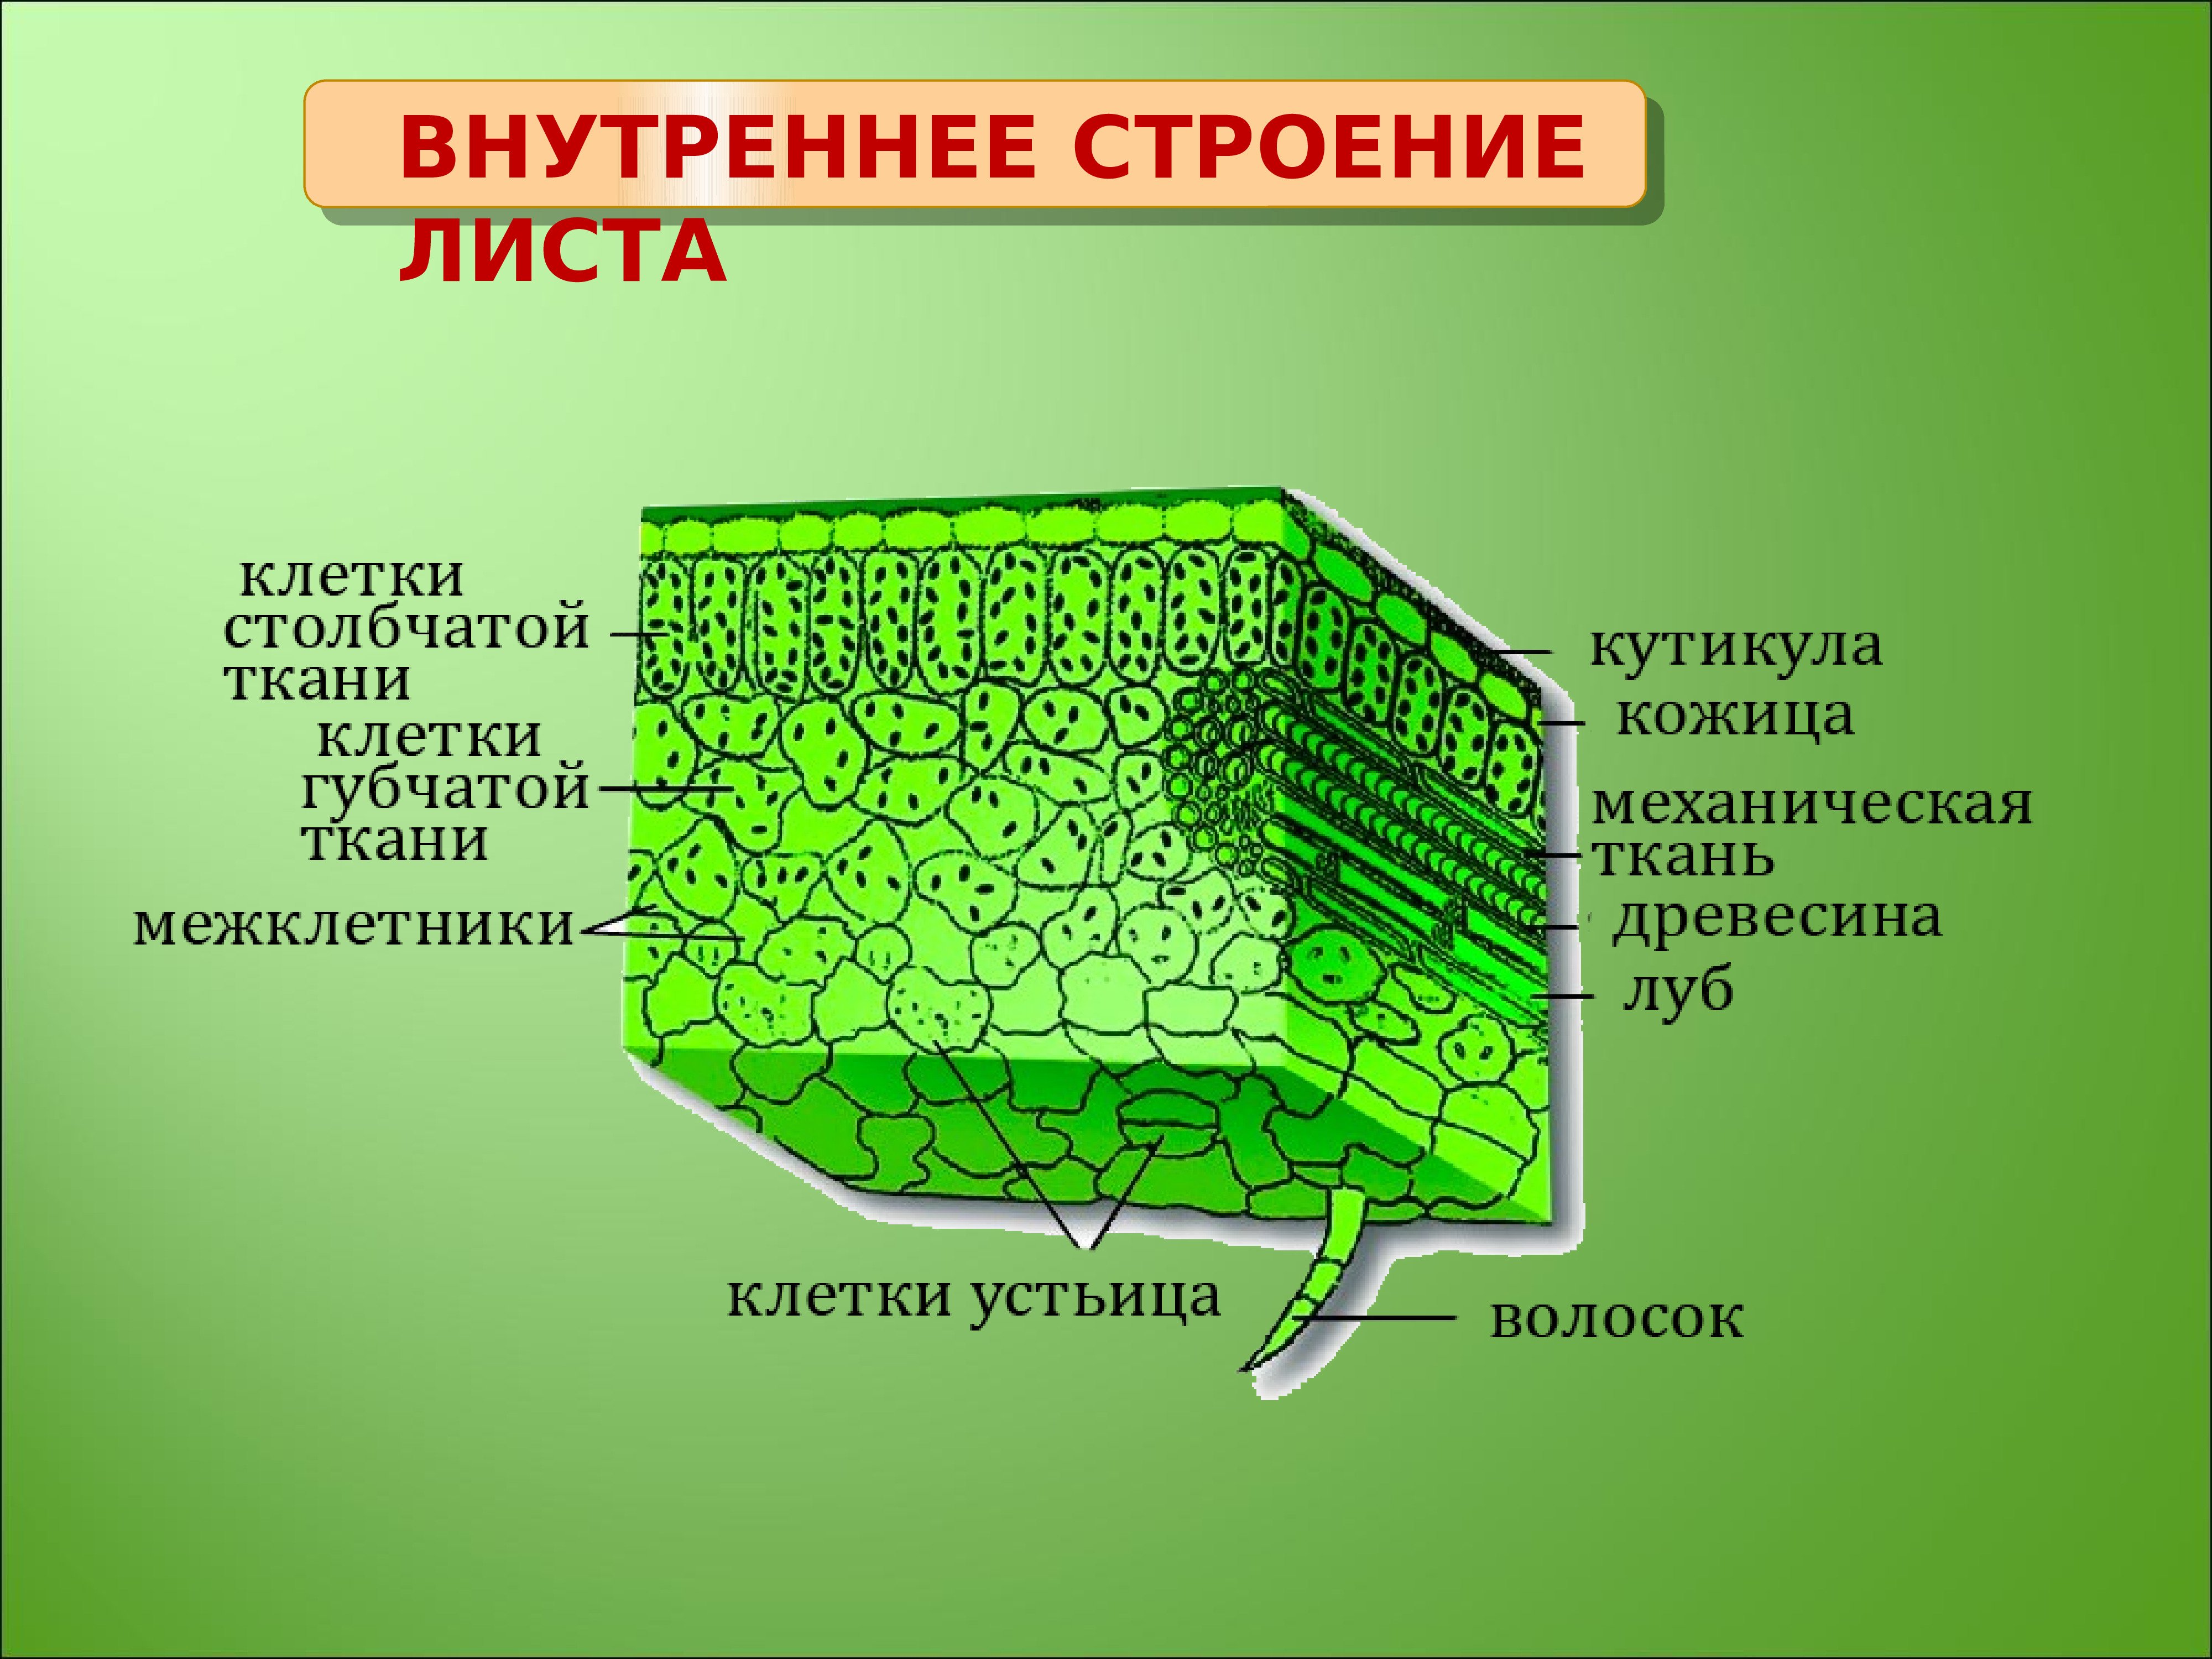 Ткани растений и их части. Внутреннее строение листа ткани. Внутреннее строение листа основная ткань. Внутреннее строение листа фотосинтезирующая ткань. Основная ткань структура листа.